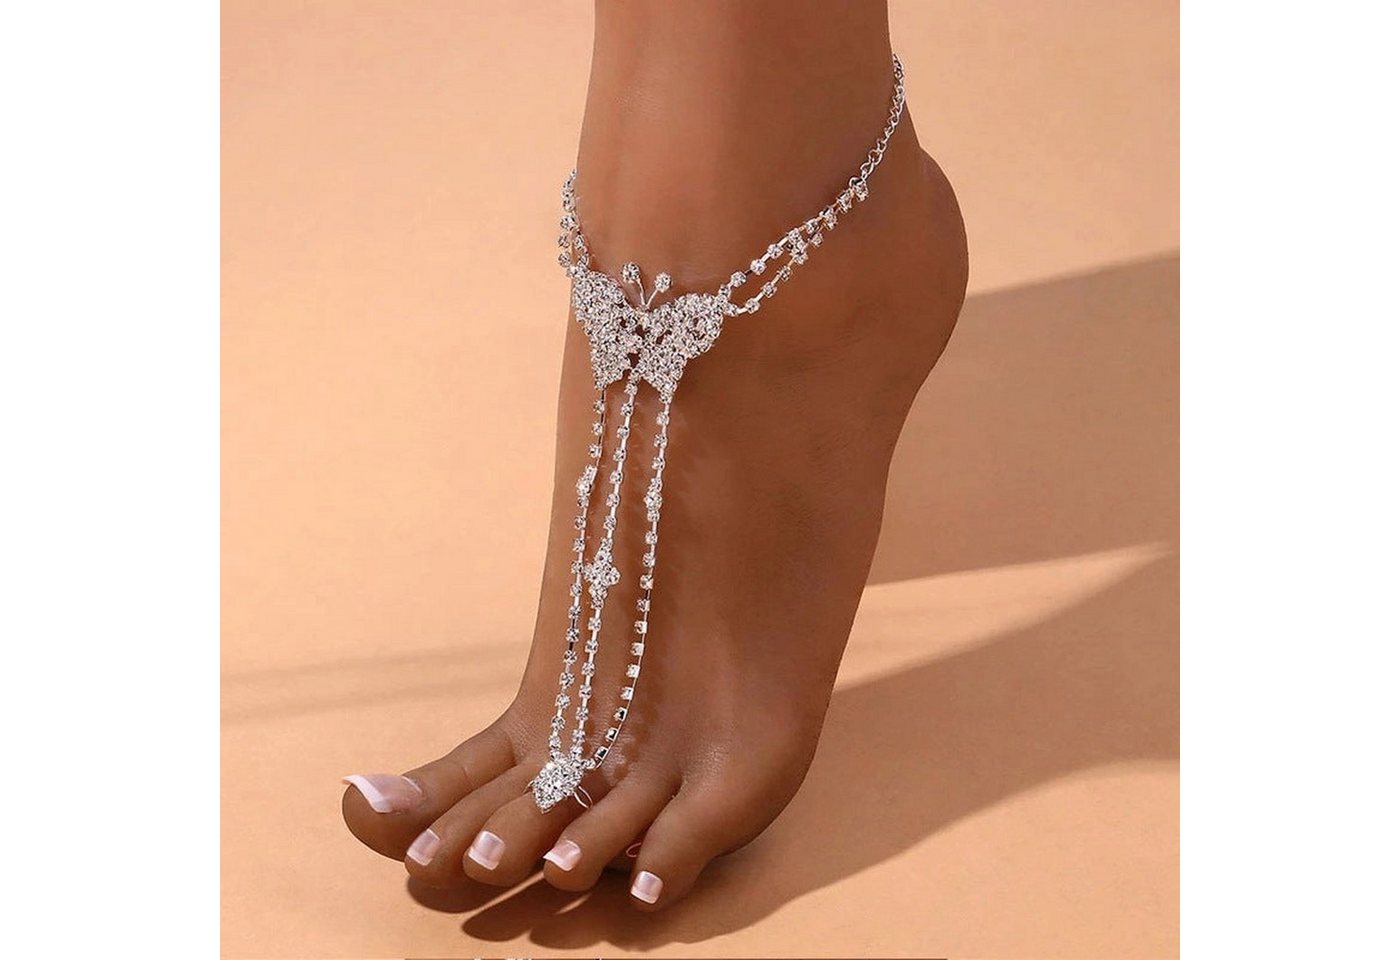 YRIIOMO Fußkette Schmetterling Fußkettchen Sommer Strand Mode, Retro Kralle Kette Finger Fuß Zubehör von YRIIOMO